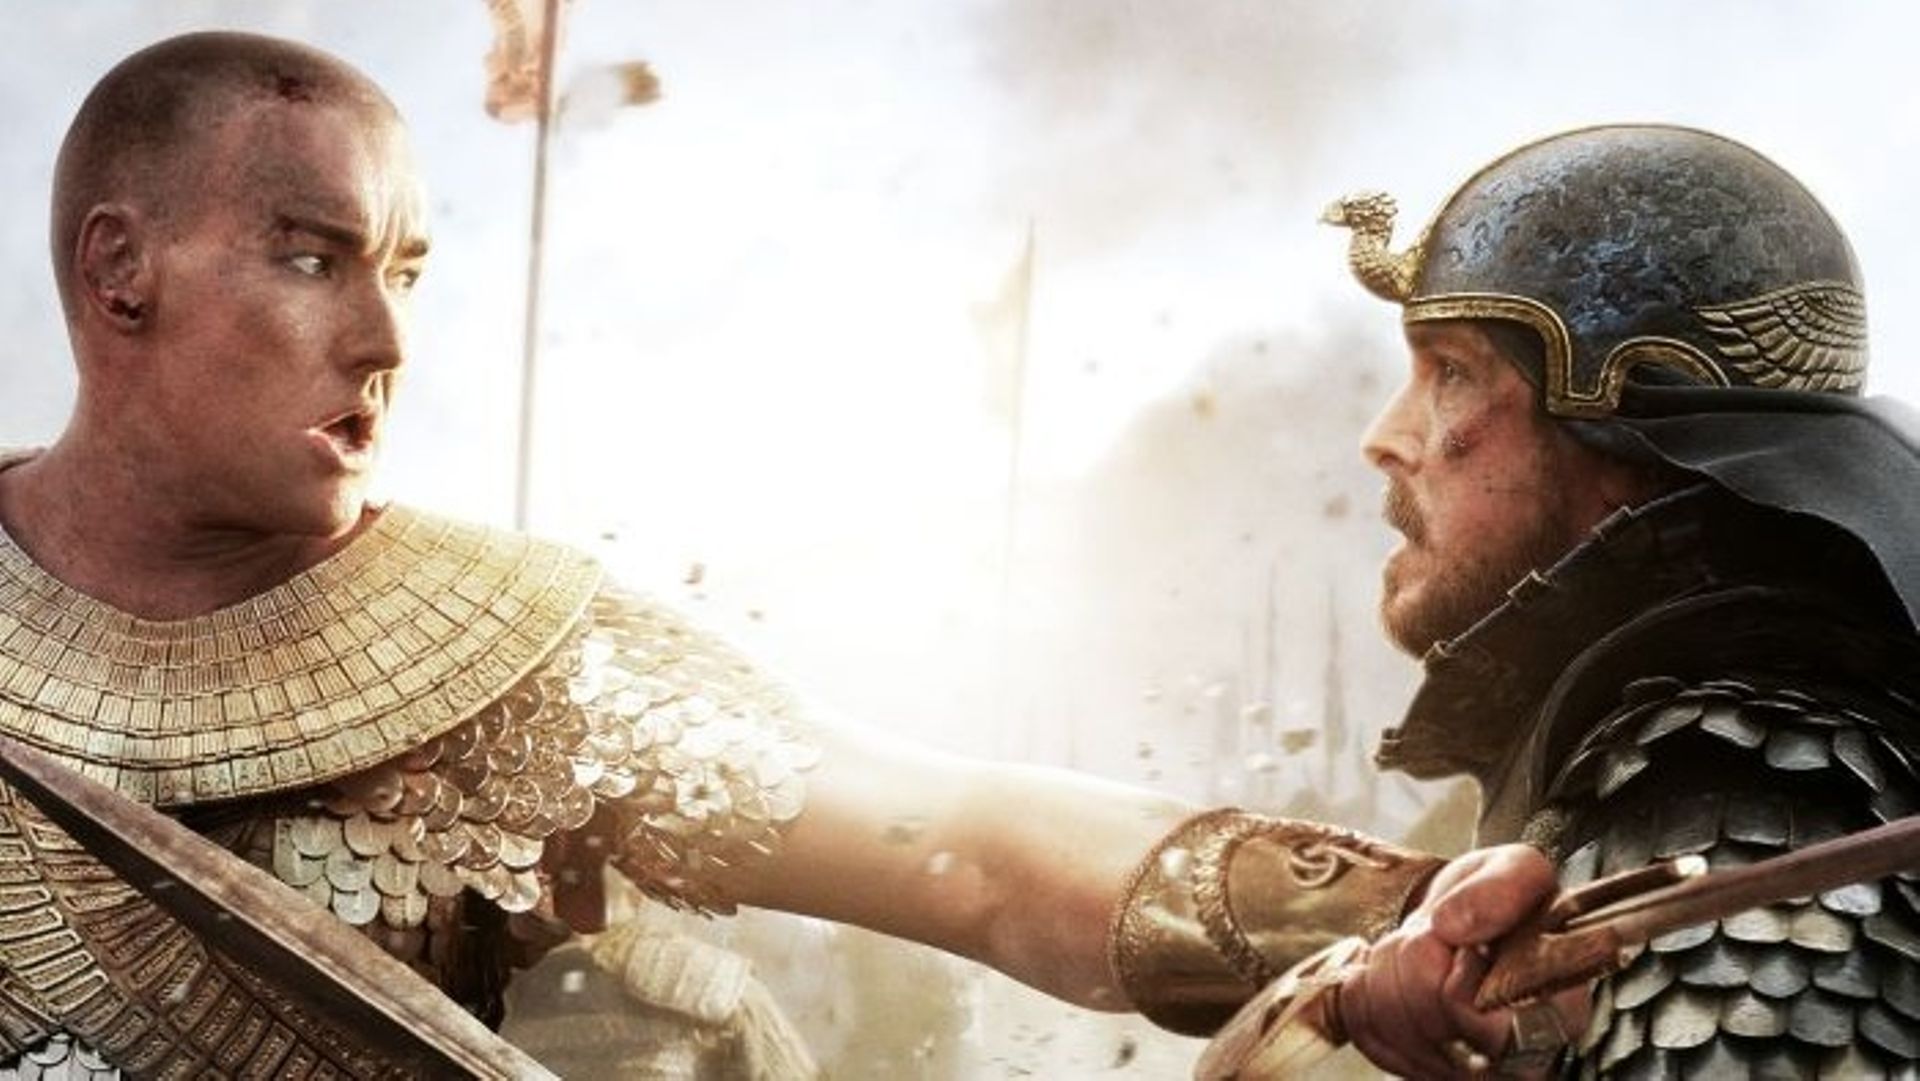 Christian Bale et Joel Edgerton dans "Exodus : Gods and kings"